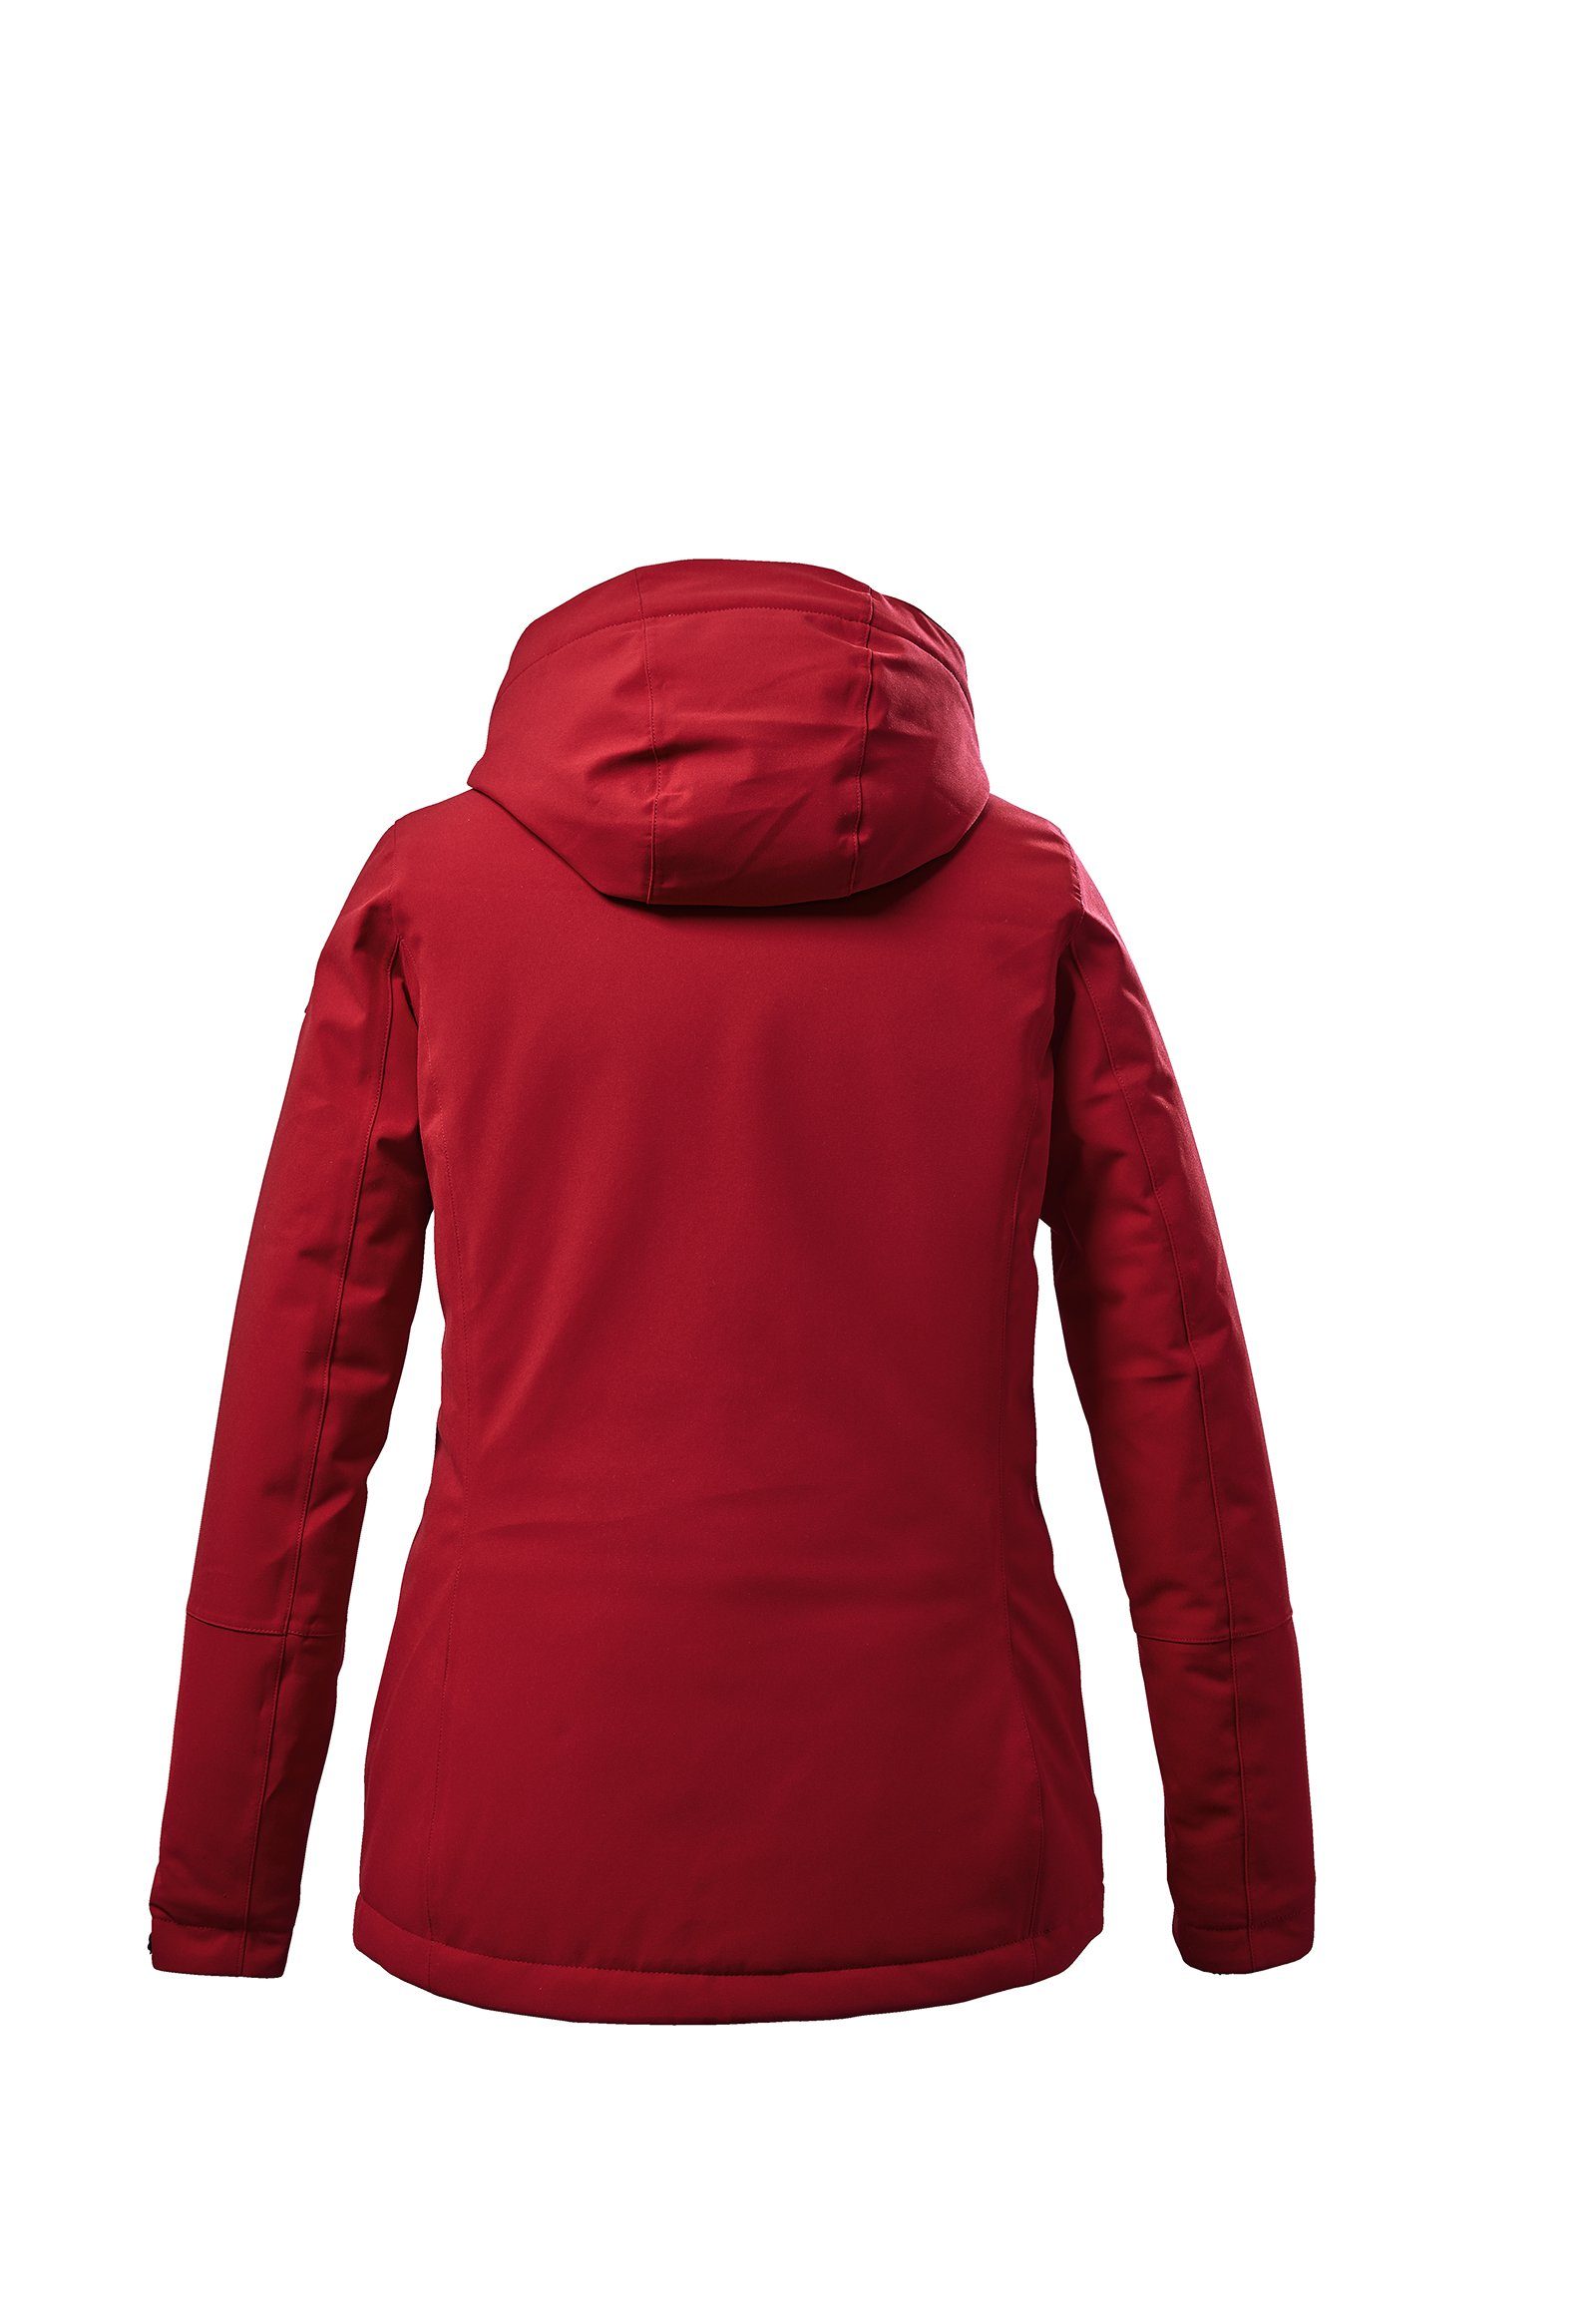 Damen Winterjacke Killtec Funktionsjacke mit KOW140 Killtec 00400 rot abzippbare